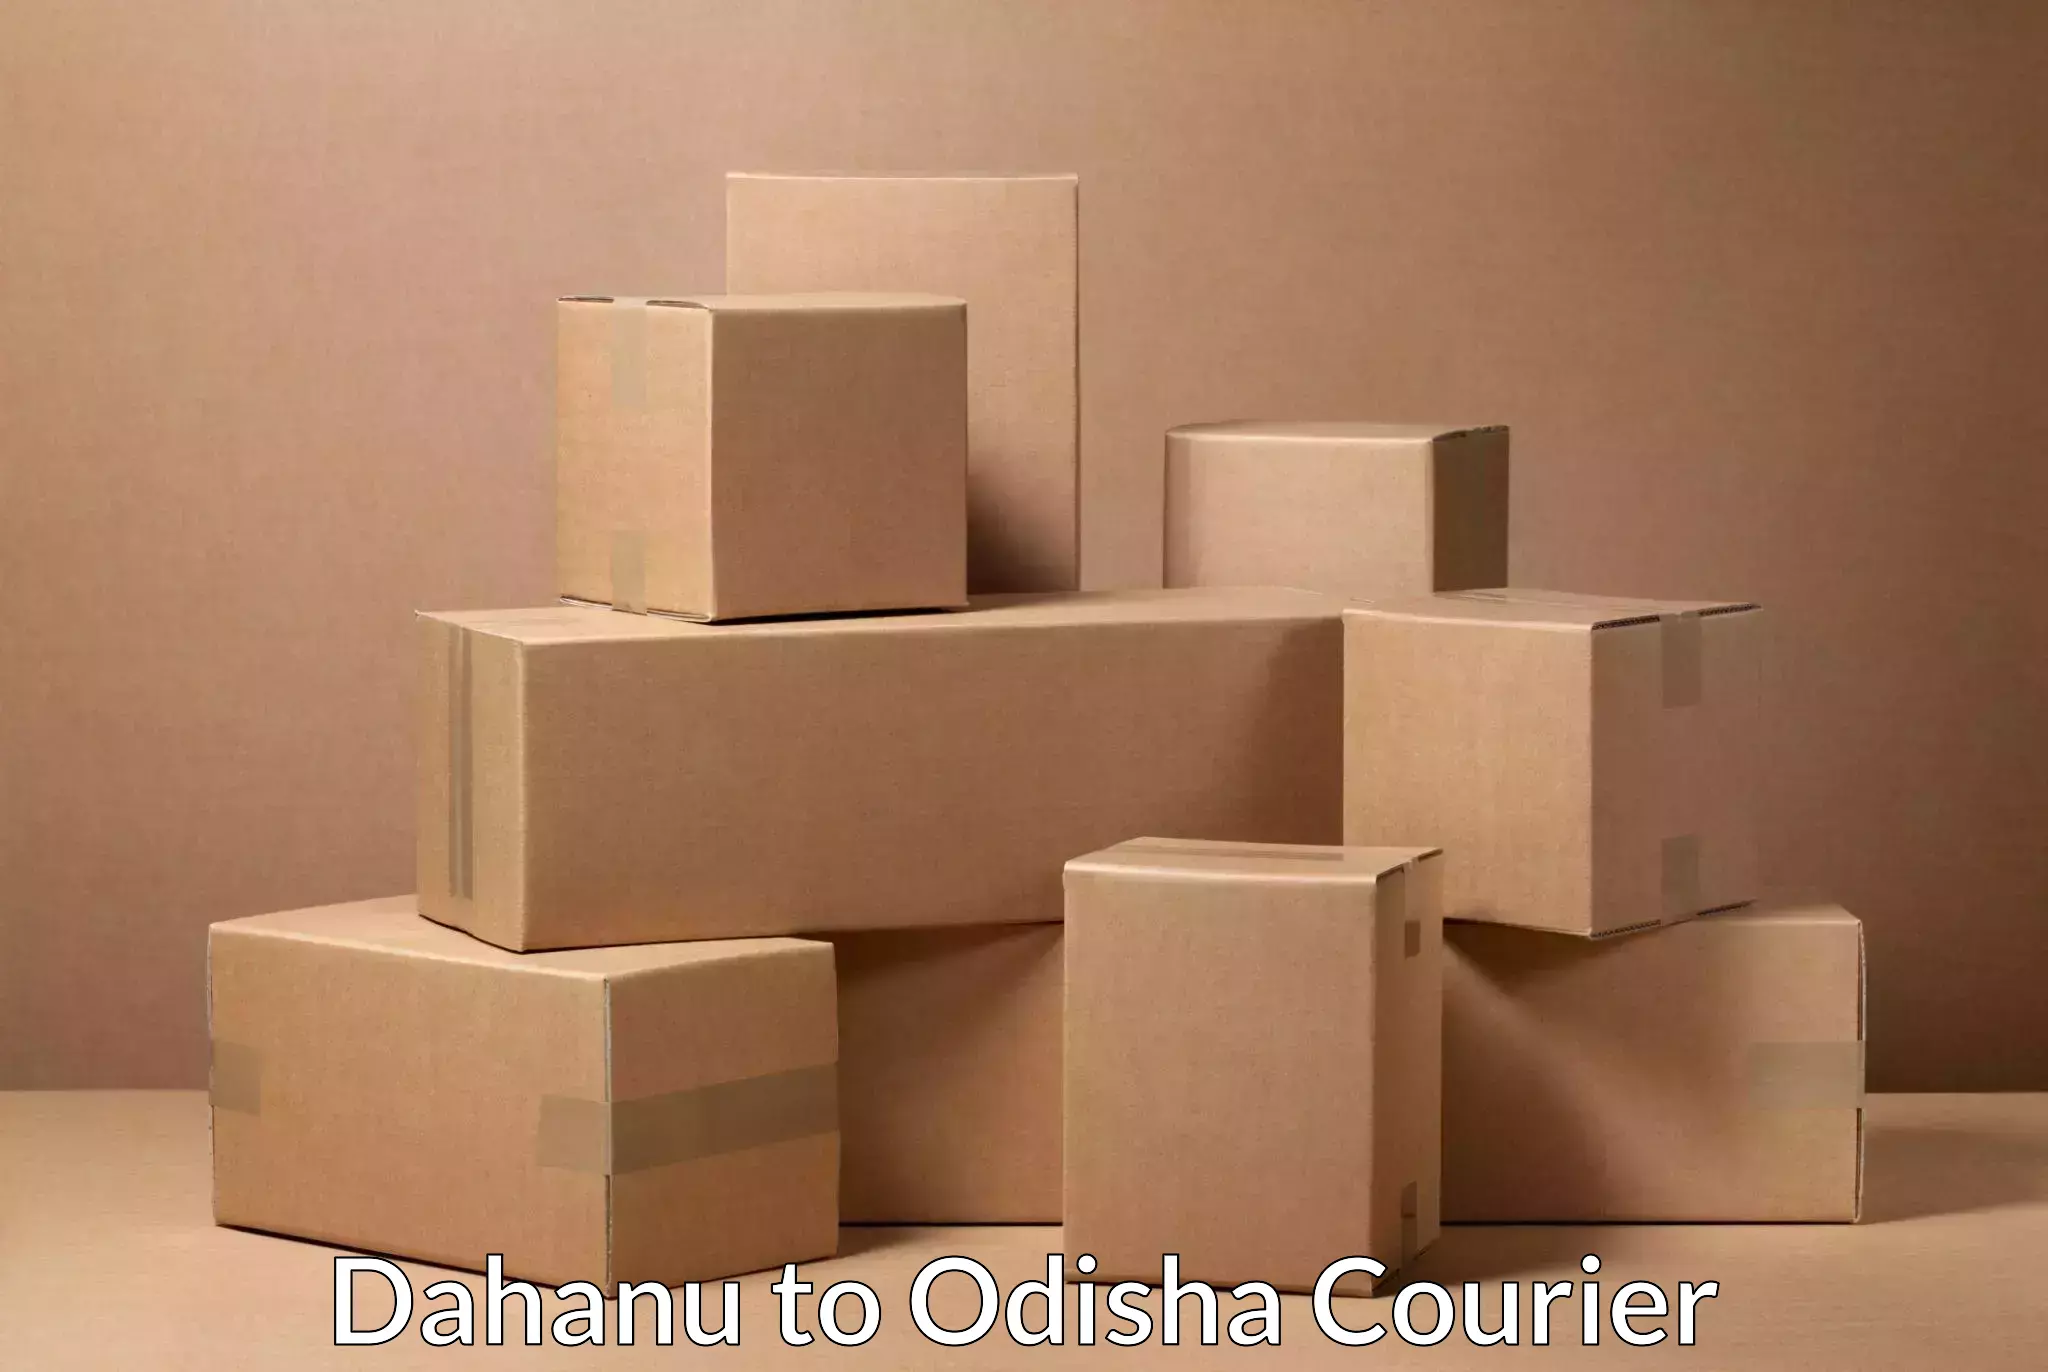 On-call courier service Dahanu to Badagada